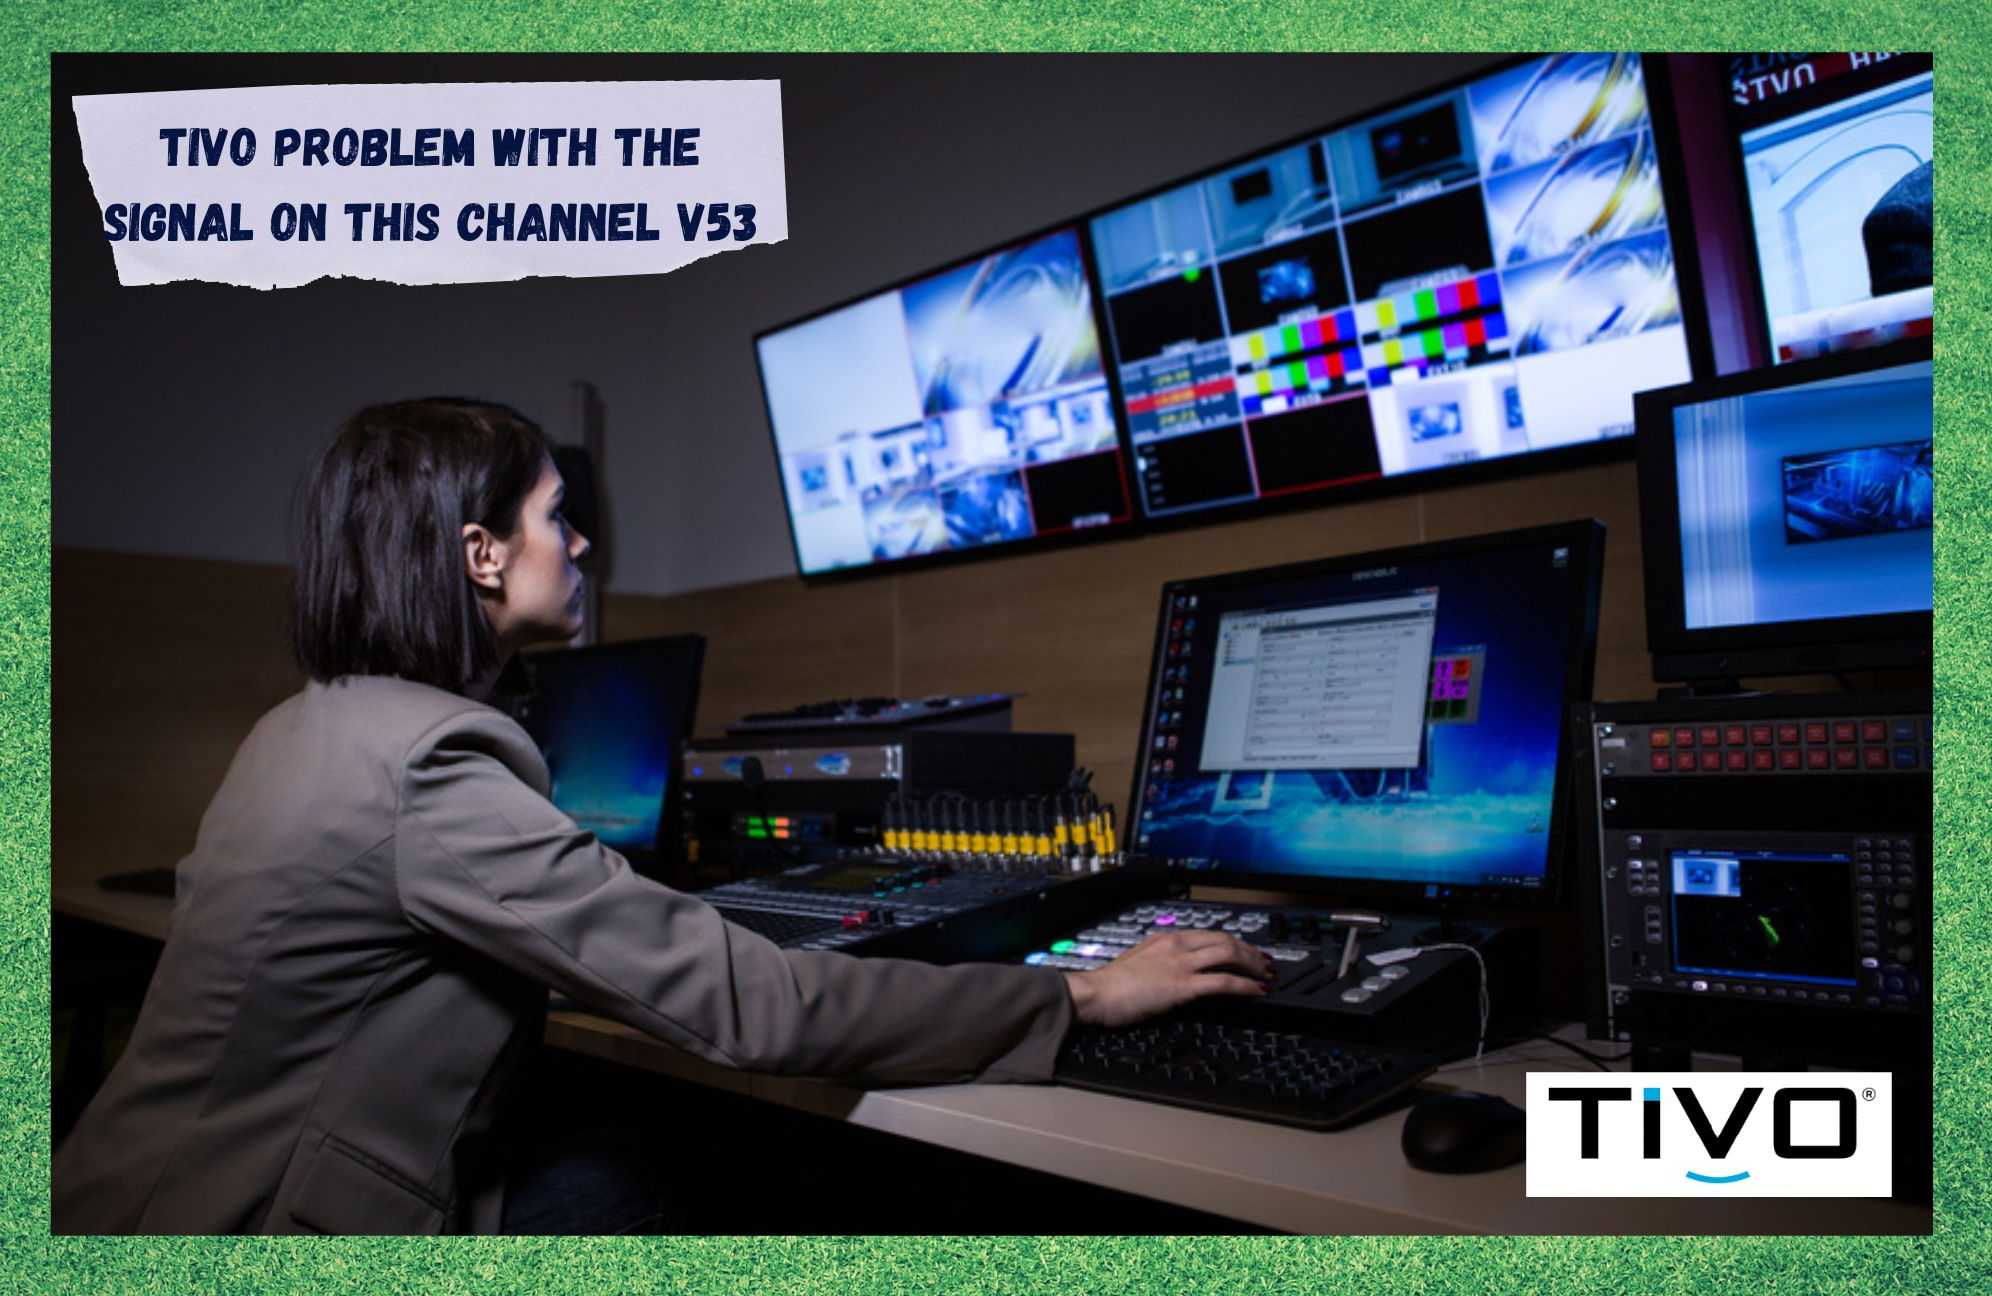 TiVo: Ongelma tämän kanavan signaalin kanssa V53 (Vianmääritys)